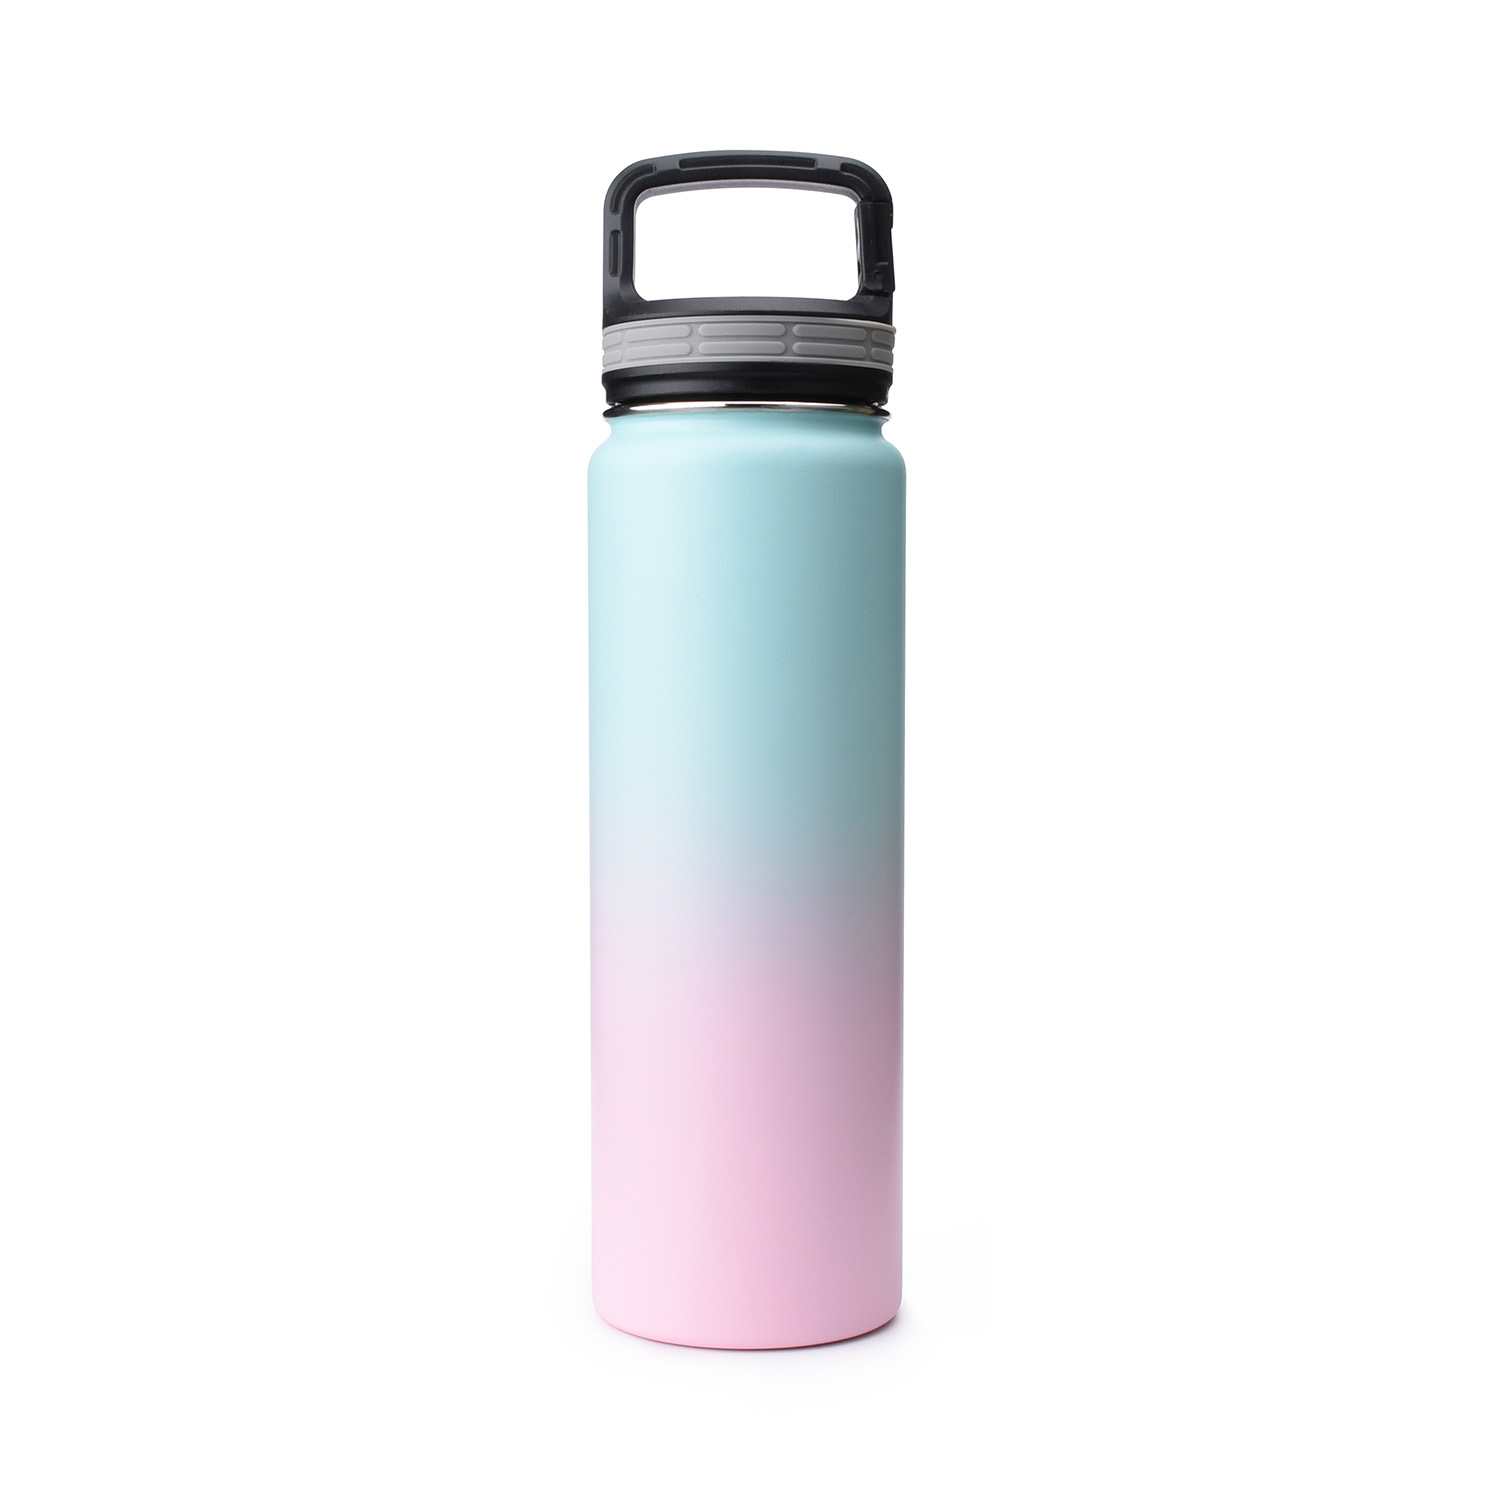 https://www.waterbottle.tech/wp-content/uploads/2021/10/Vacuum-Flask-water-bottle-blank-bubble-gum-Simple-Iron-s1124f1-1.jpg